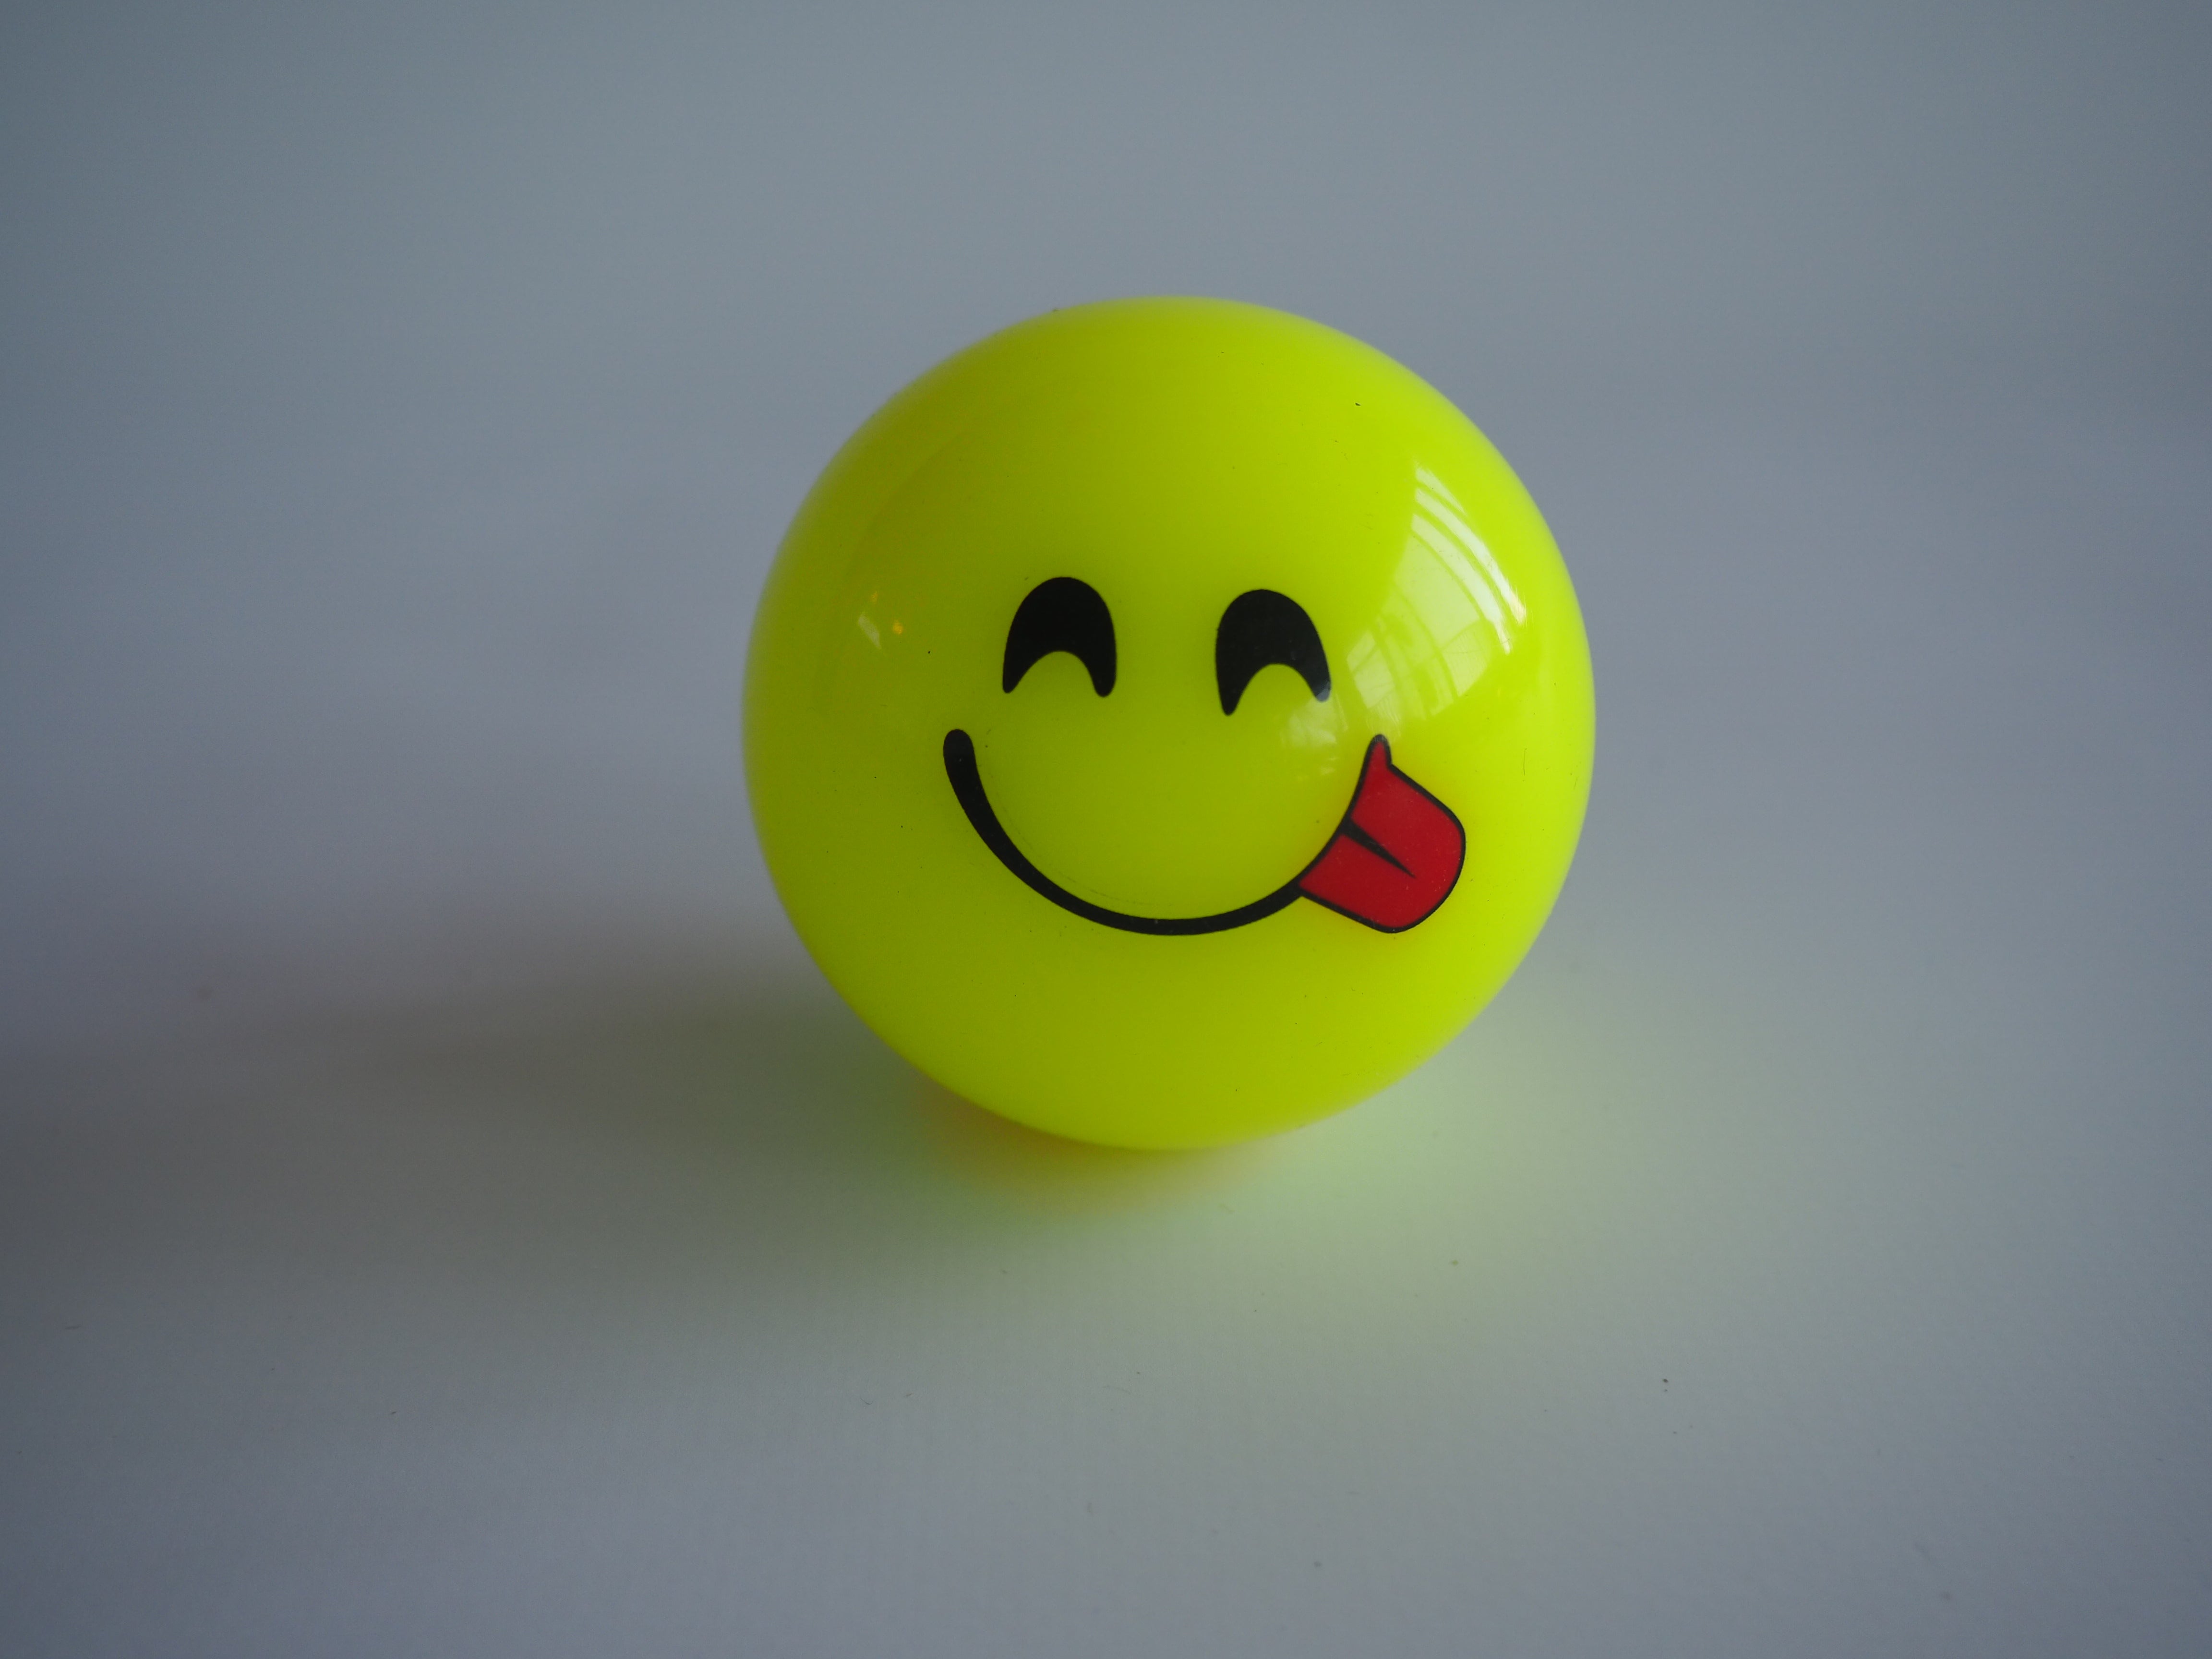 Mercian Emoji Bal Glimlach